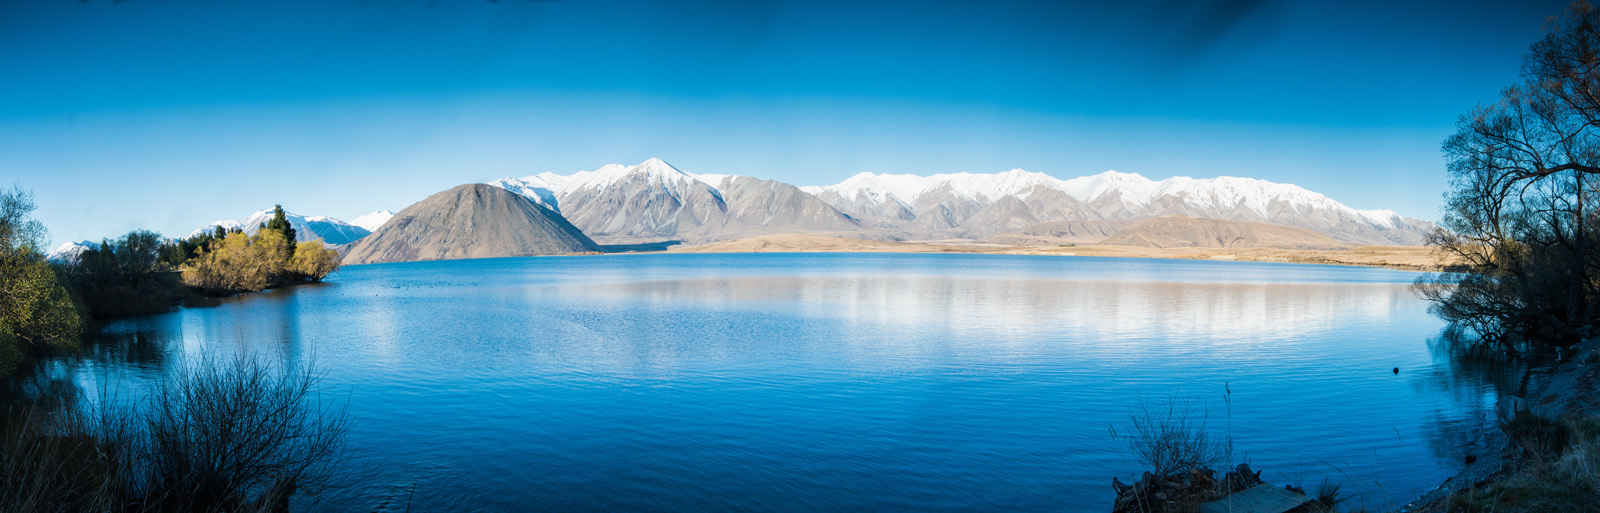 新西兰白鹭湖壁纸图片